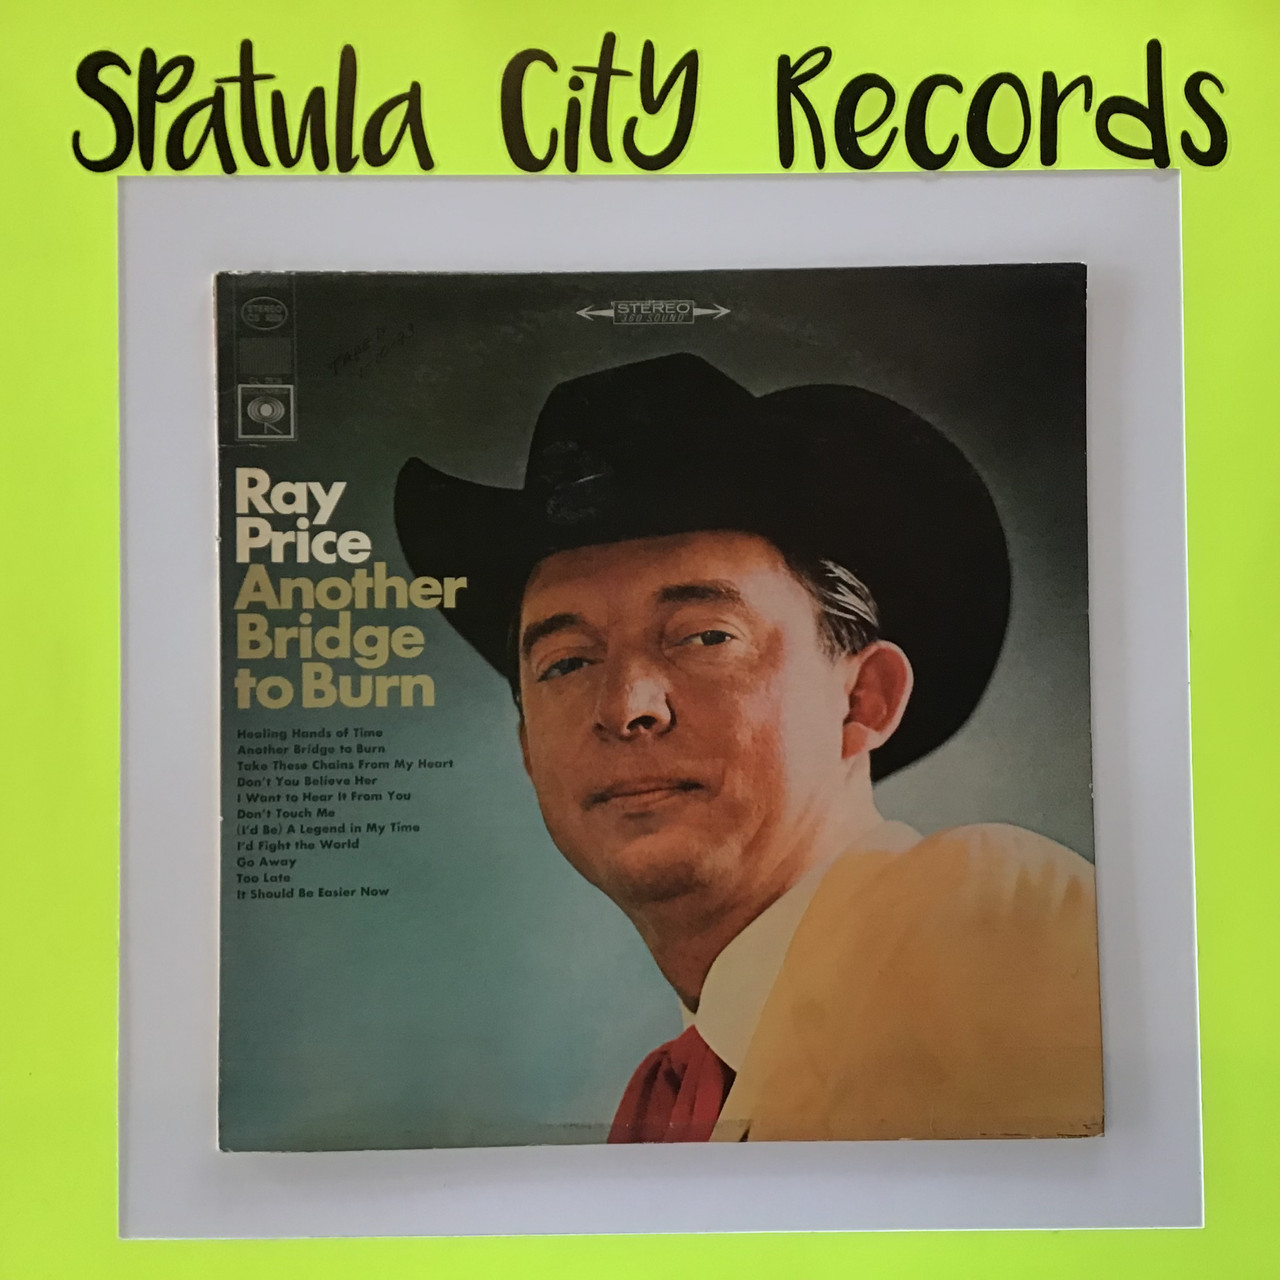 Ray Price - Another Bridge to Burn - vinyl record LP